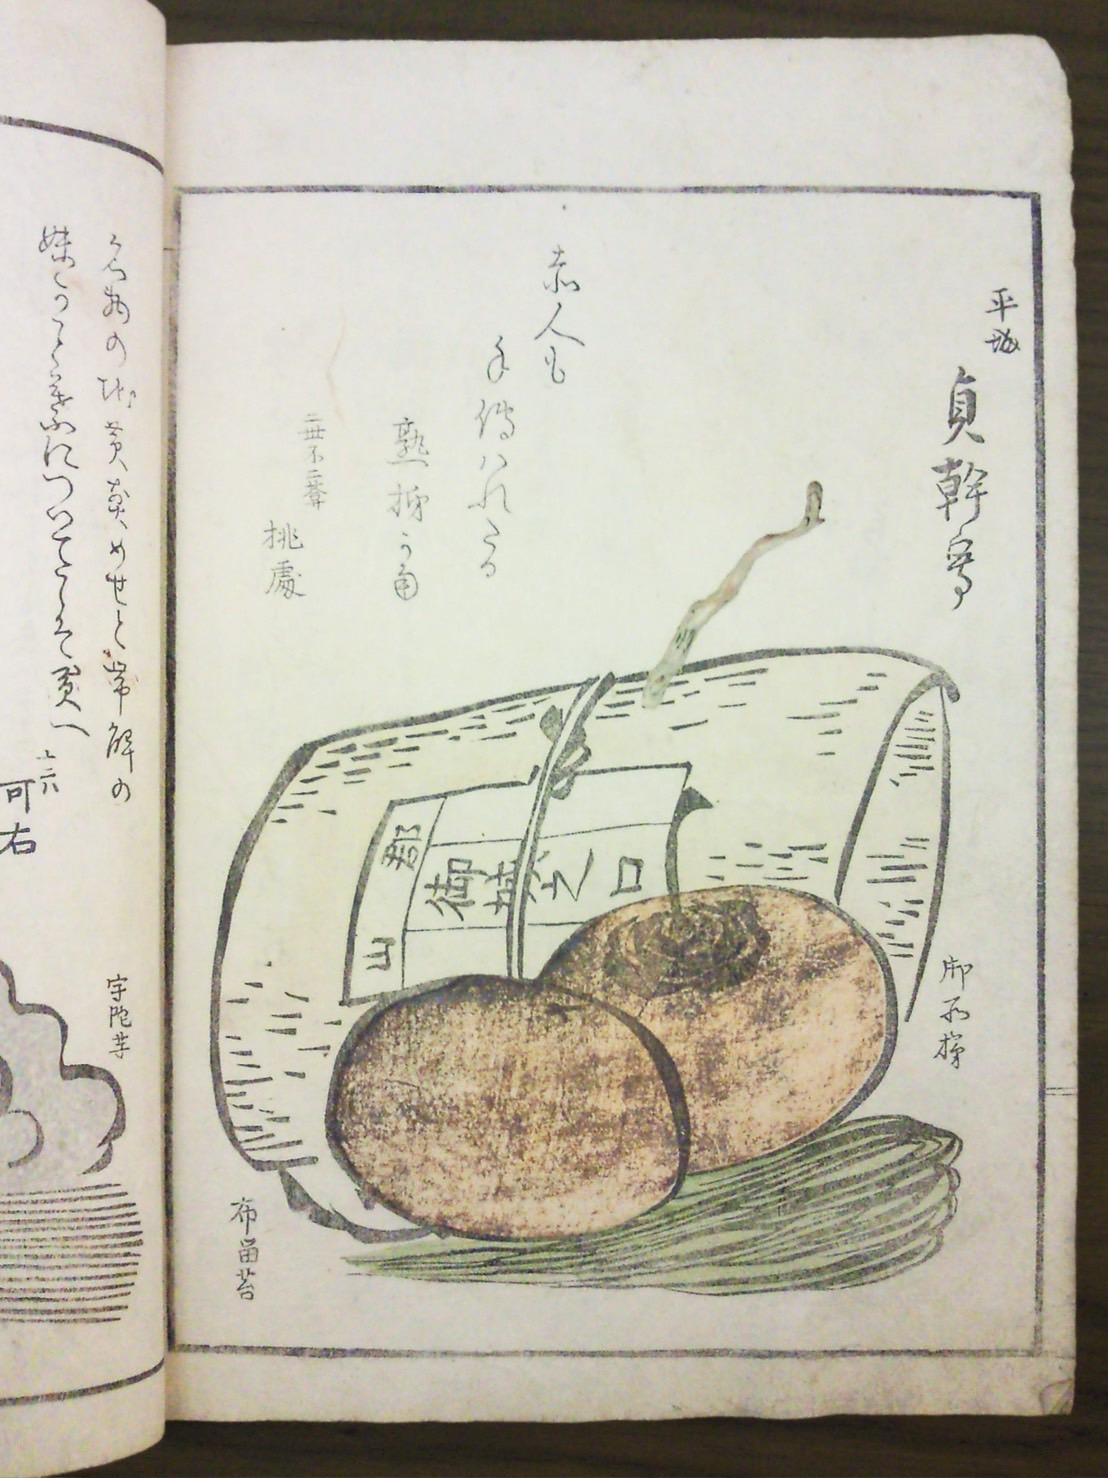 豊臣秀吉公から、鶯餅の名前を授かったともいわれている奈良の名菓「御城之口餅」